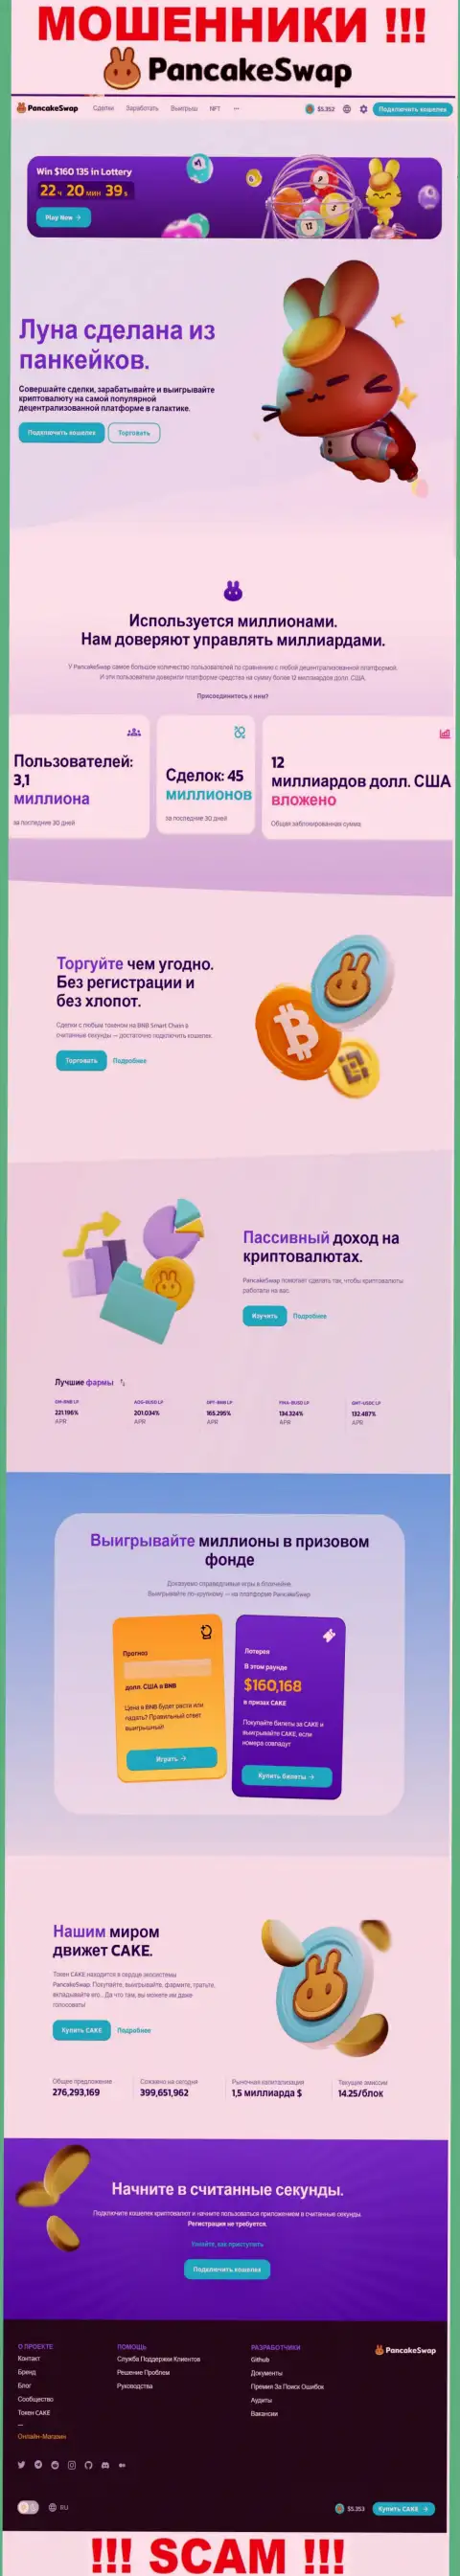 Скрин официального сайта PancakeSwap, забитого липовыми обещаниями